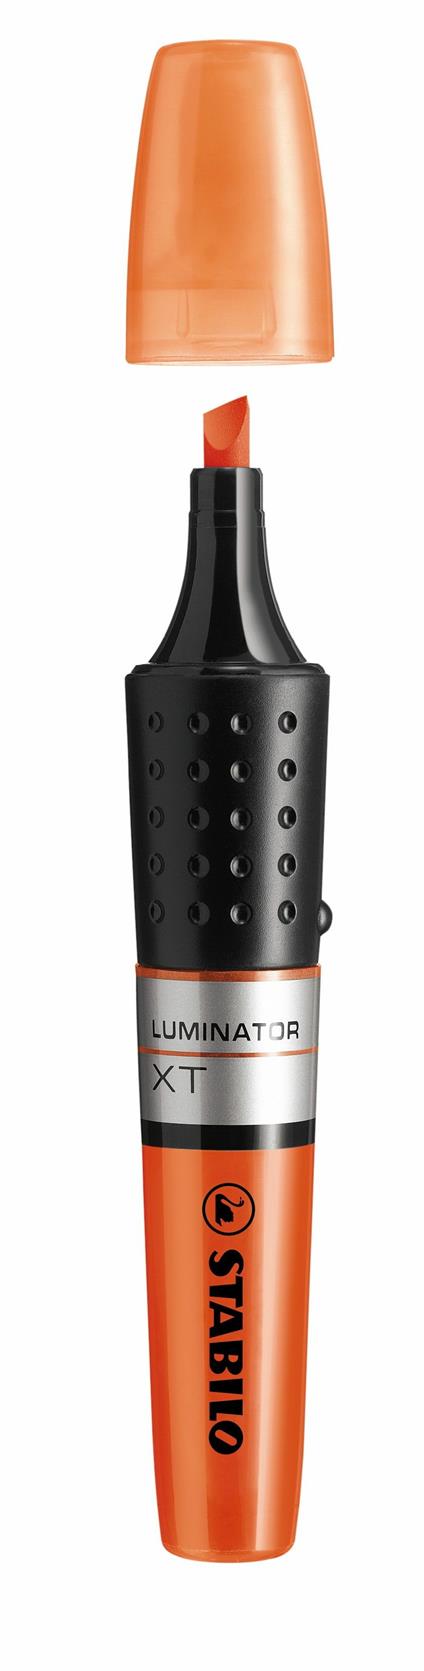 Evidenziatore - STABILO LUMINATOR - lunga durata e doppio tratto (2 + 5 mm) - Arancione